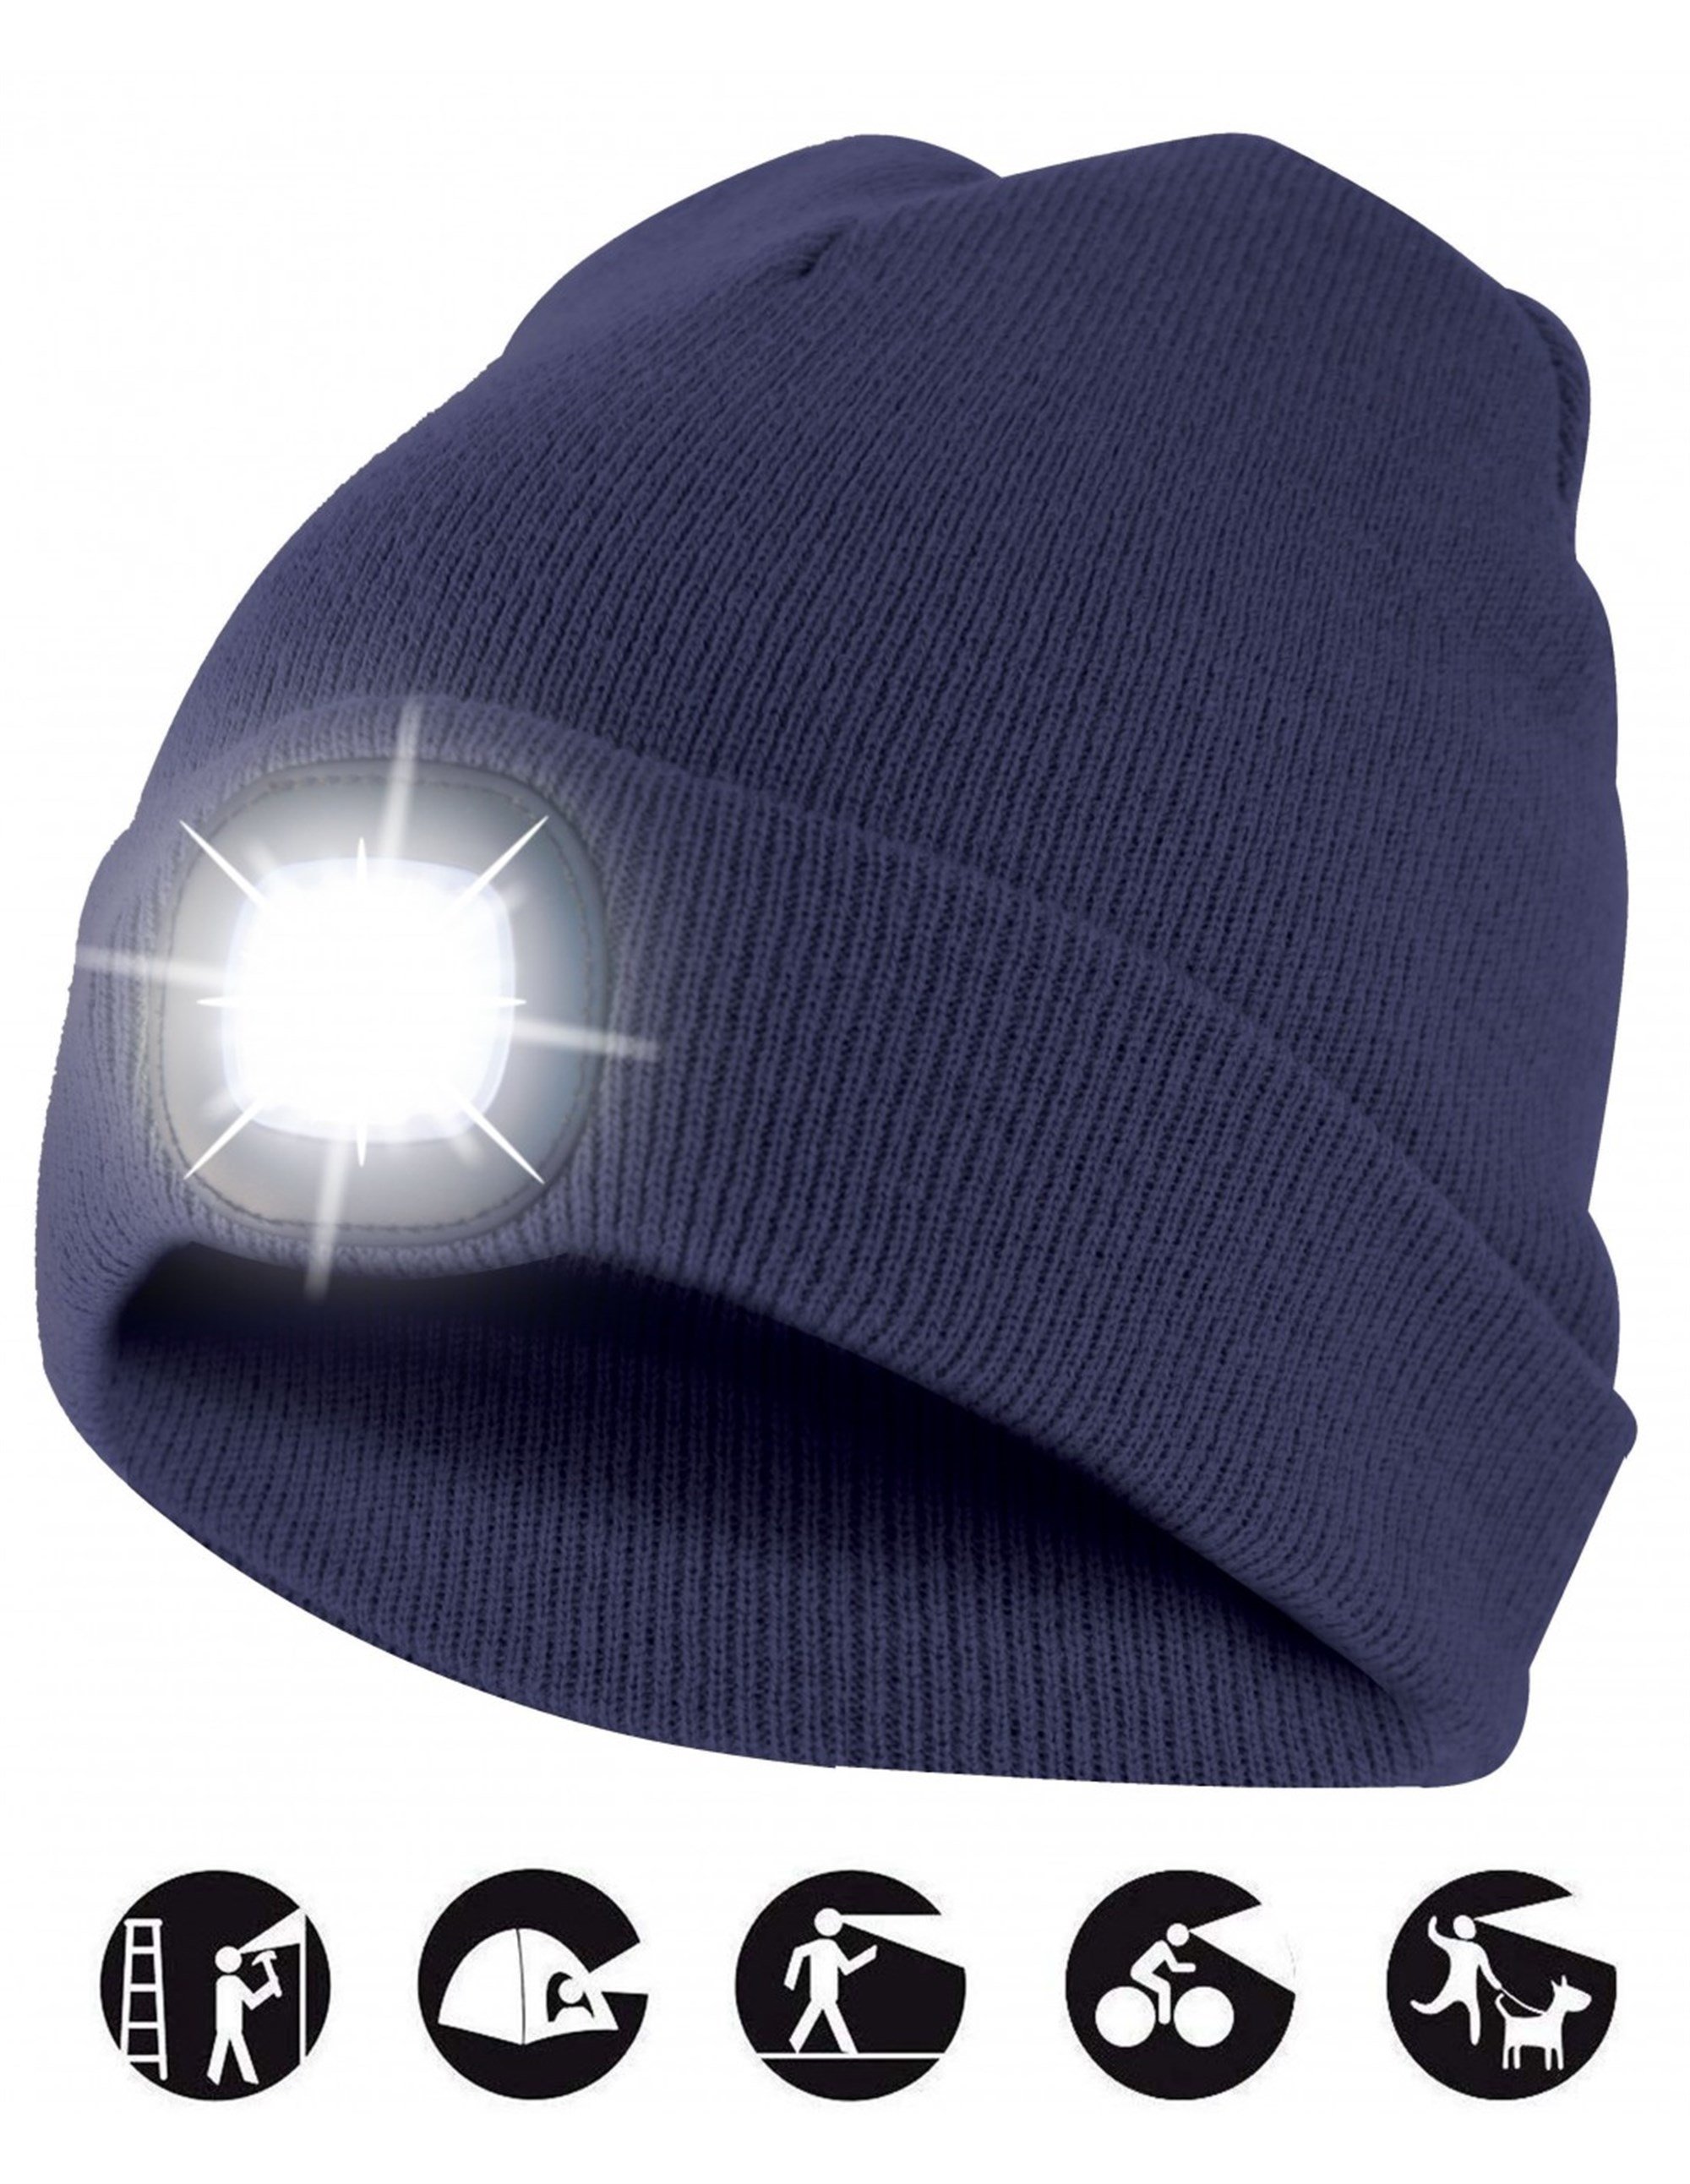 LED ön ışıklı şapka, LED ışıklı örme şapka jogging, kamp, çalışma, yürüyüş  vb. İçin ideal, USB